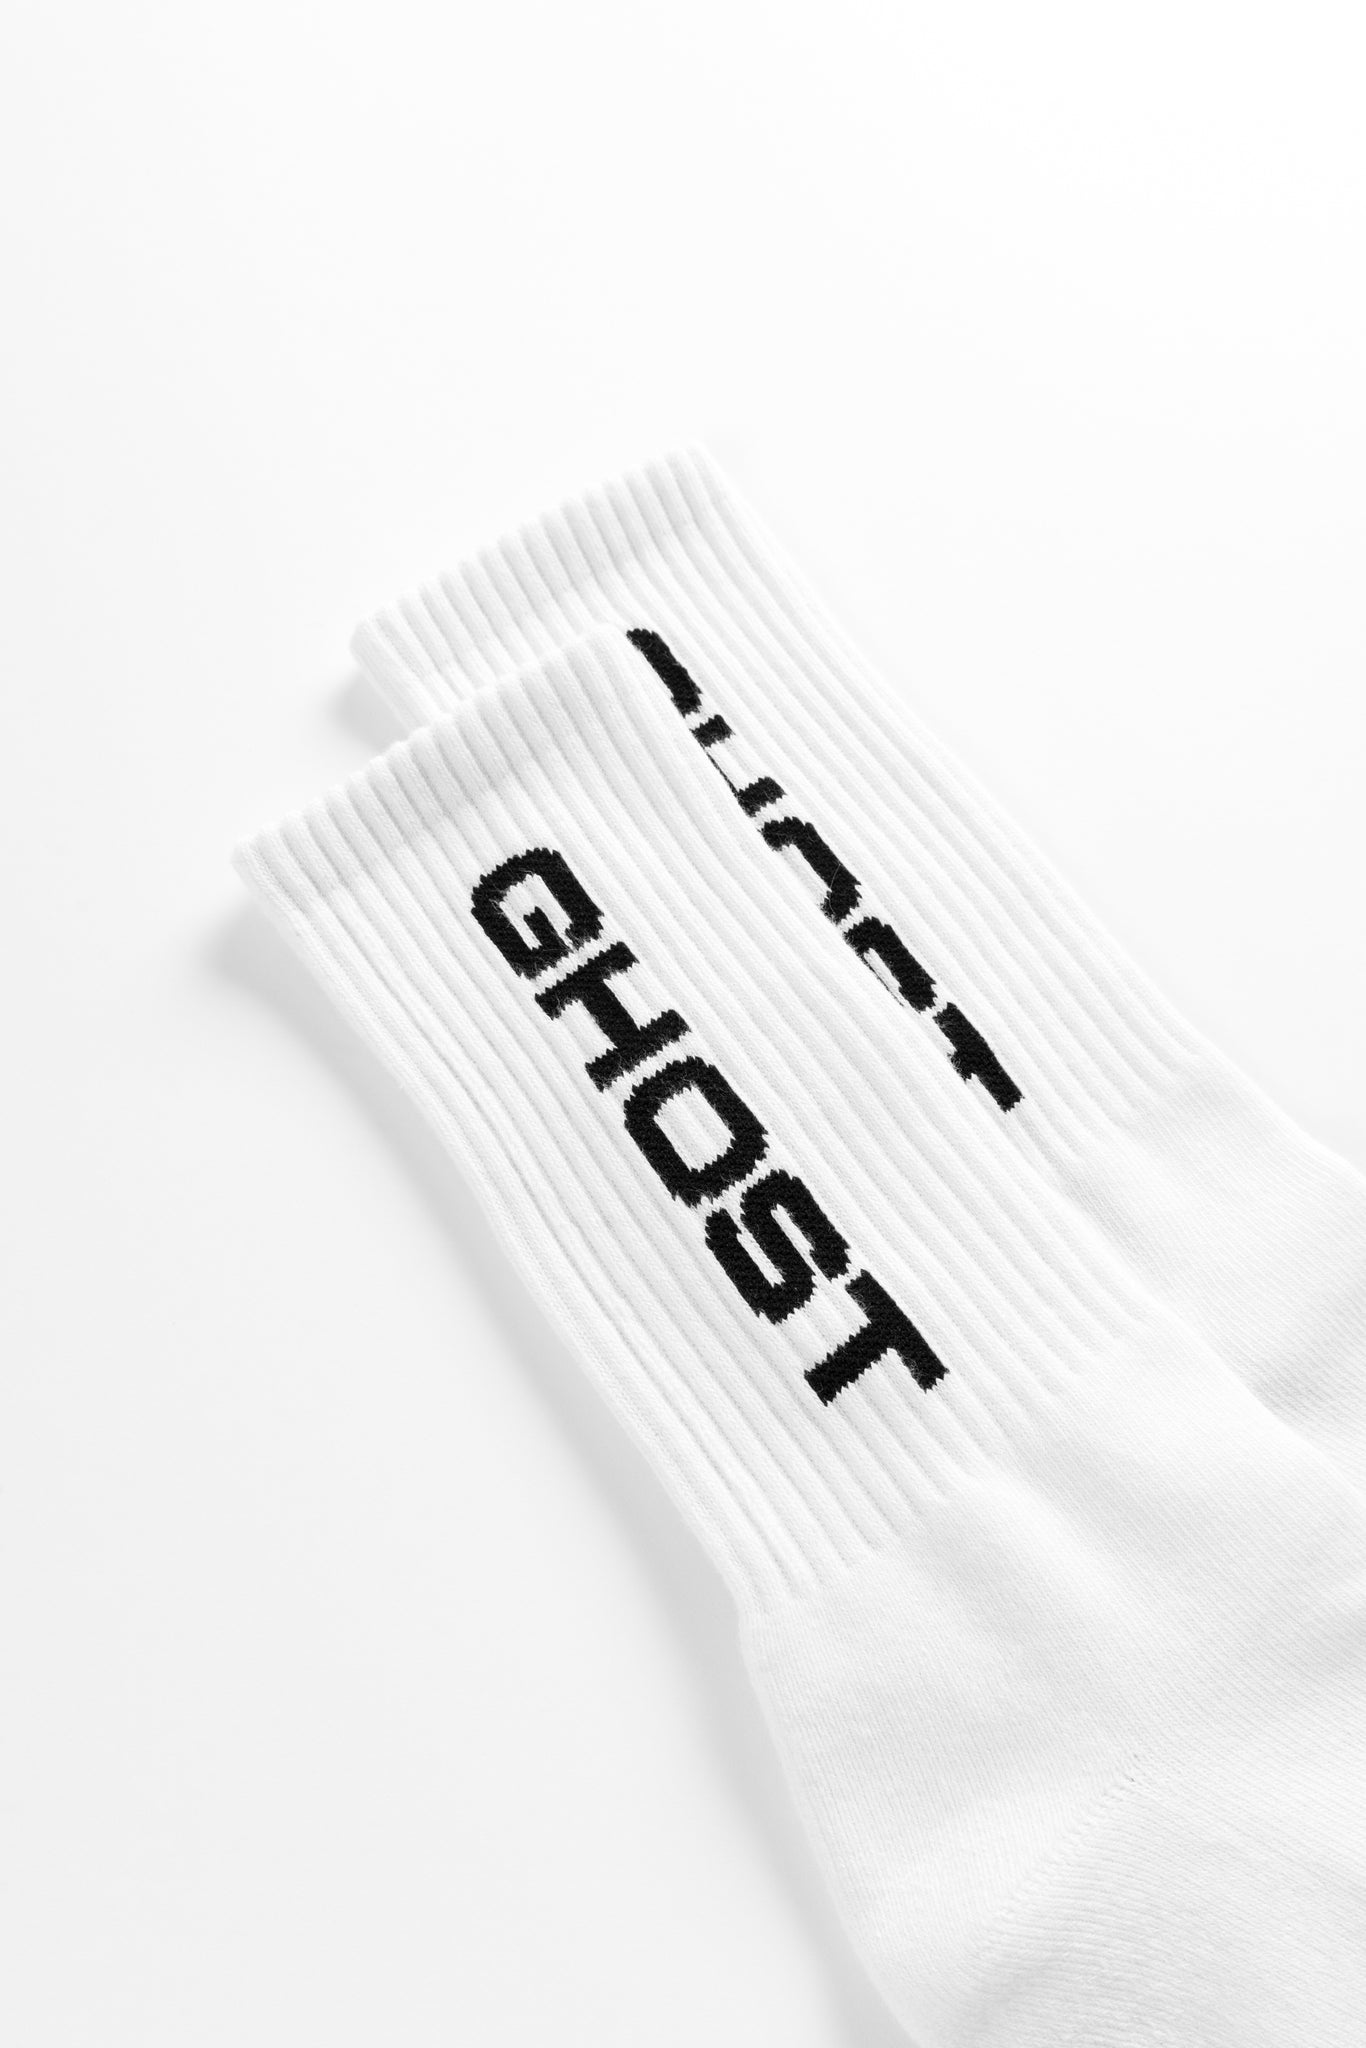 Ghost Hardware [ staple ] Socks